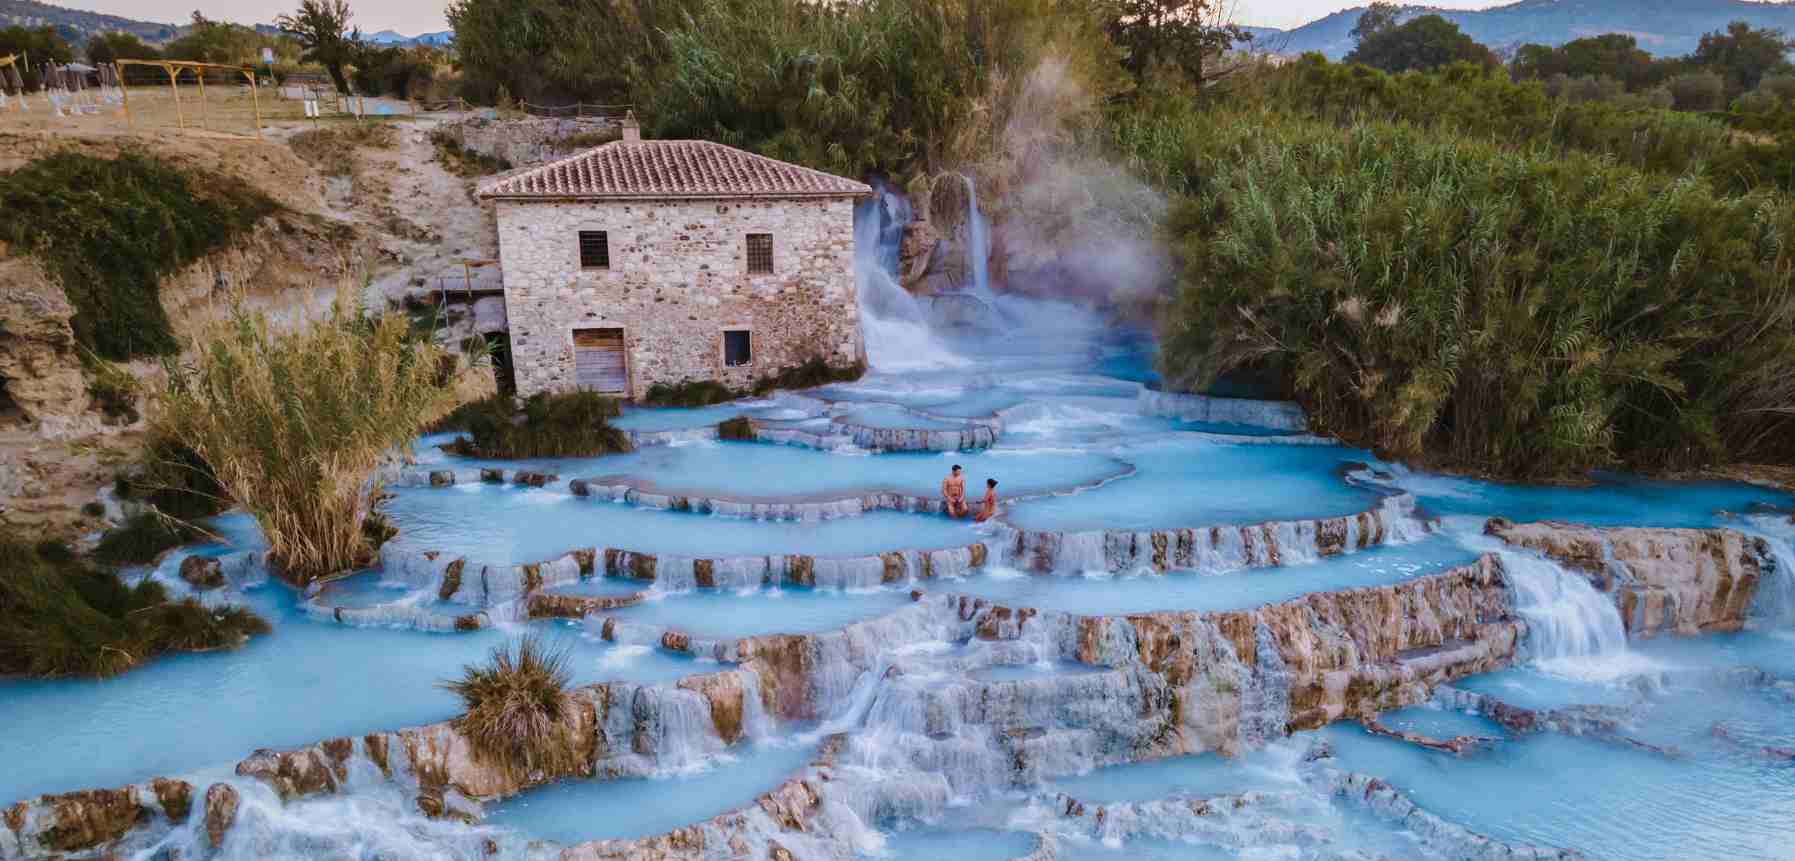 Soak in the Tuscan Hot Springs